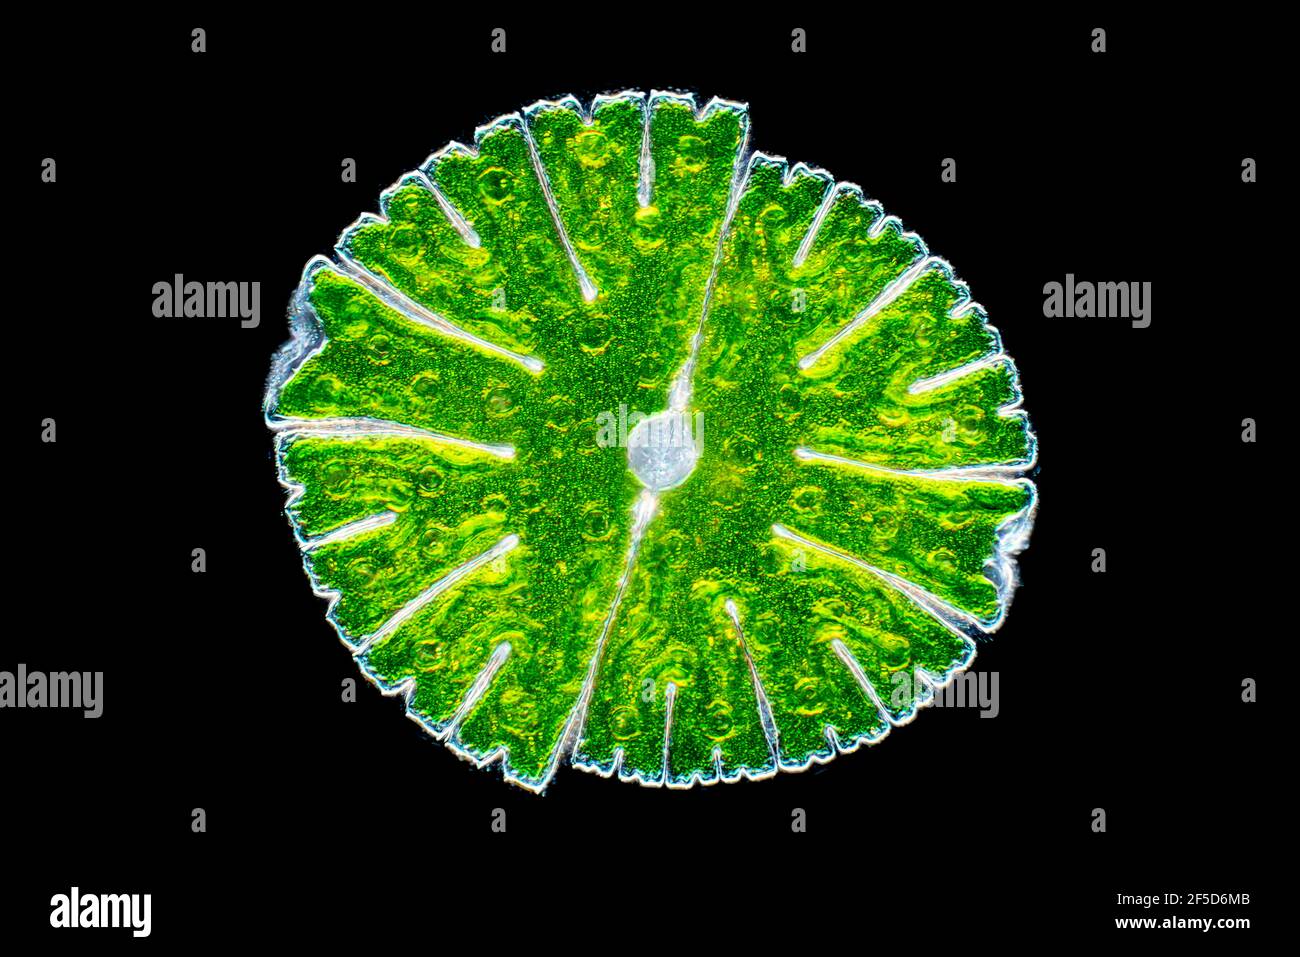 Grünalge (Micrasterias rotata), Dunkelfeld mikroskopisches Bild, Vergrößerung x100 bezogen auf 35 mm, Deutschland Stockfoto